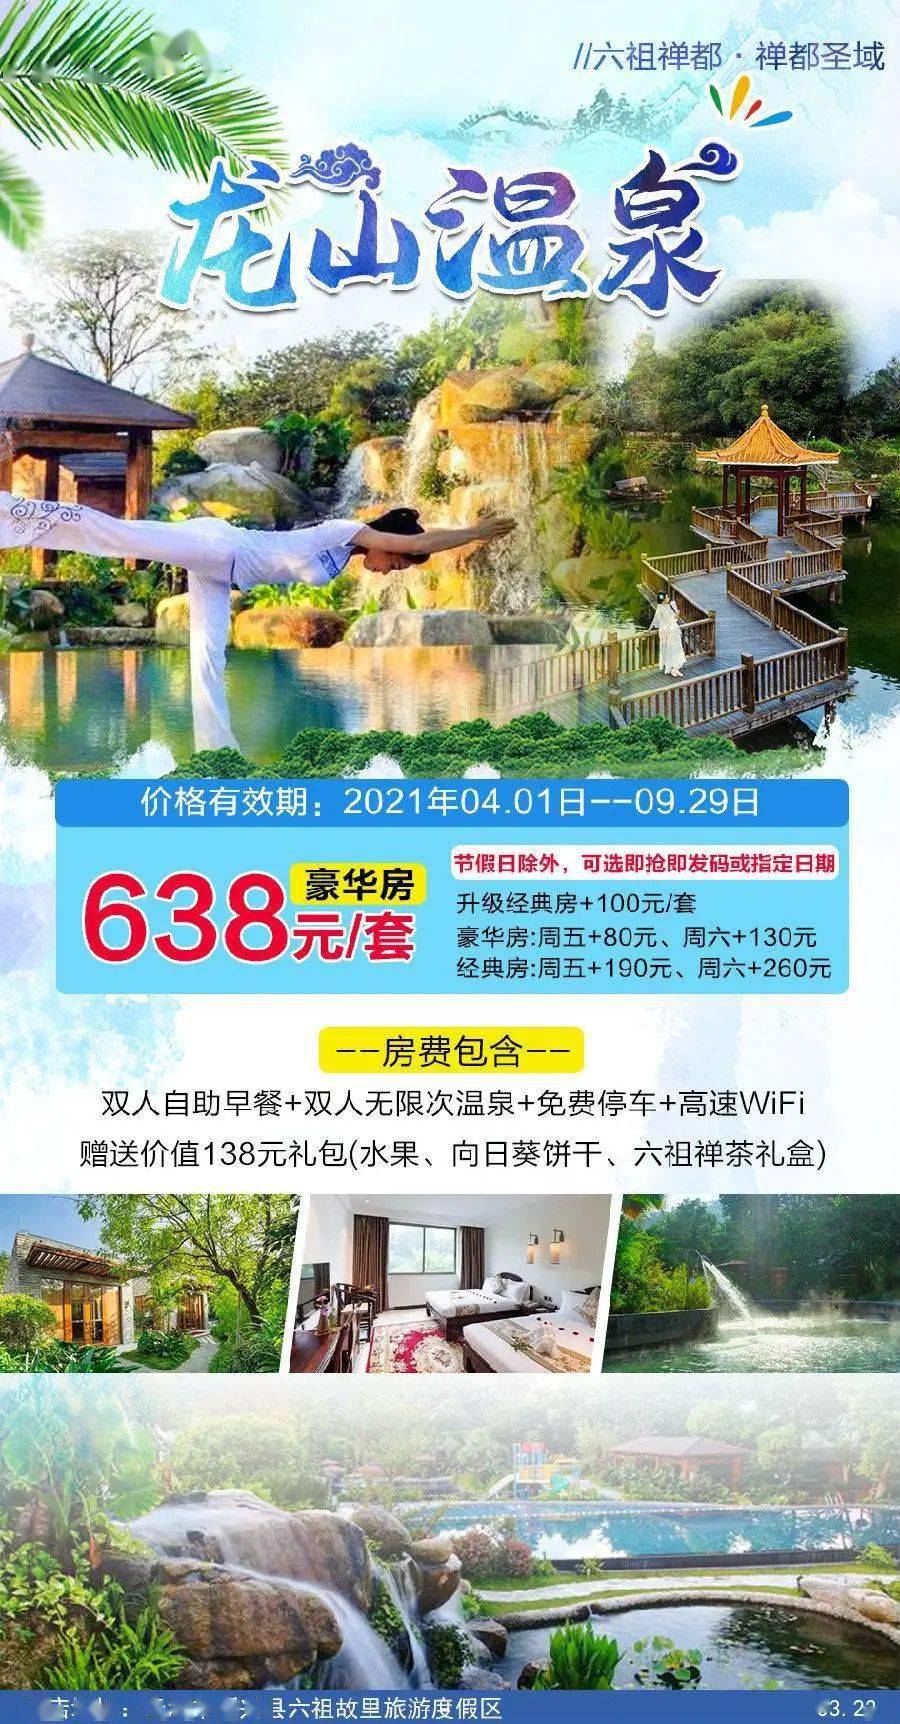 预售抢购 新兴龙山温泉酒店 抢购价:638元/间 抢购日期:即日起到售完